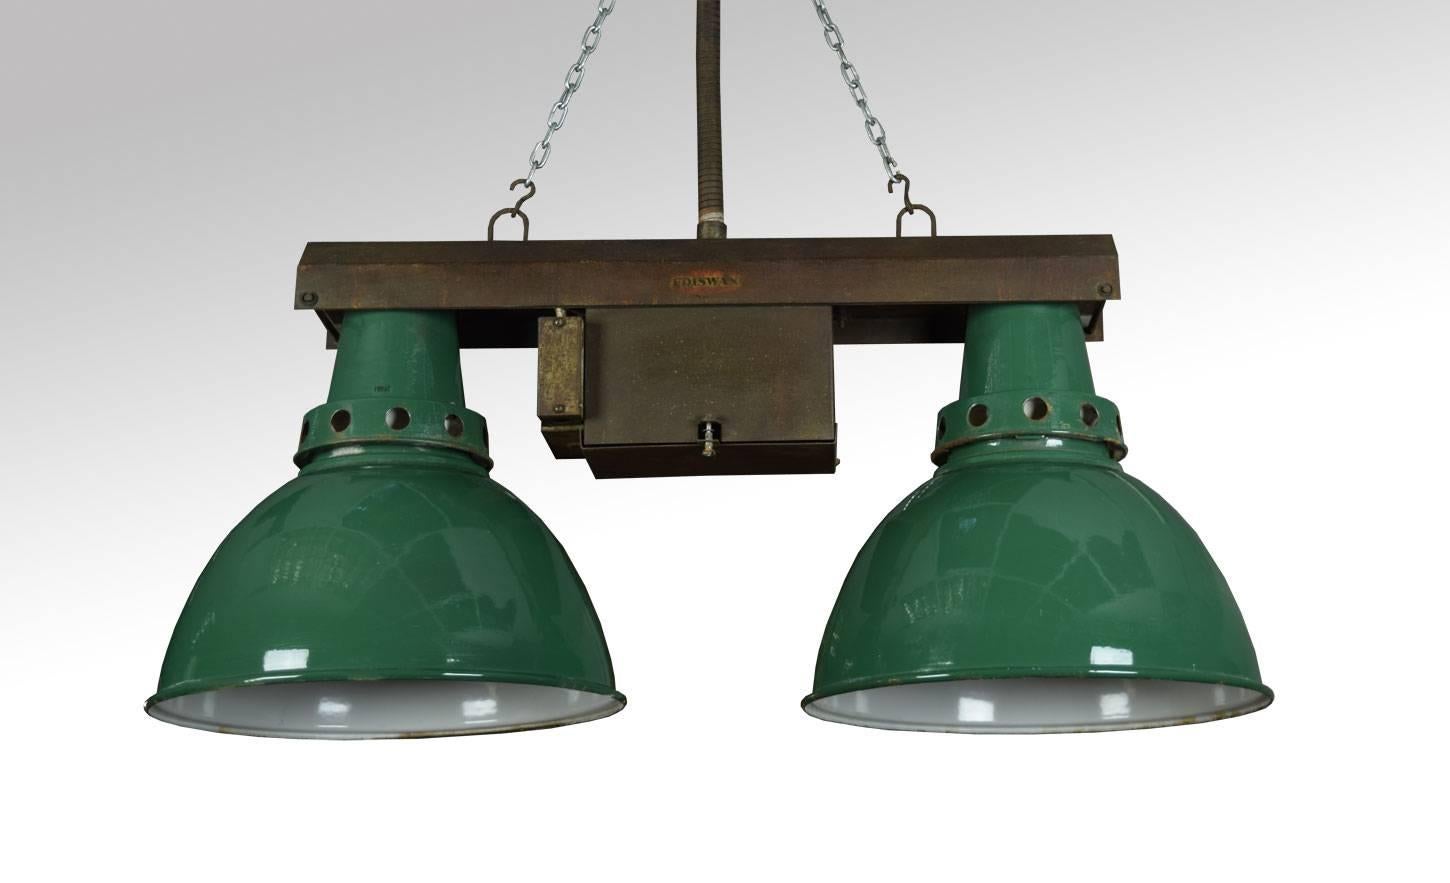 Ensemble de quatre lampes industrielles vintage ayant un cadre métallique double au-dessus de deux réflecteurs émaillés verts (Non câblé).

Dimensions :

Hauteur 17.5 pouces.

Largeur 39 pouces.

Profondeur 16 pouces.